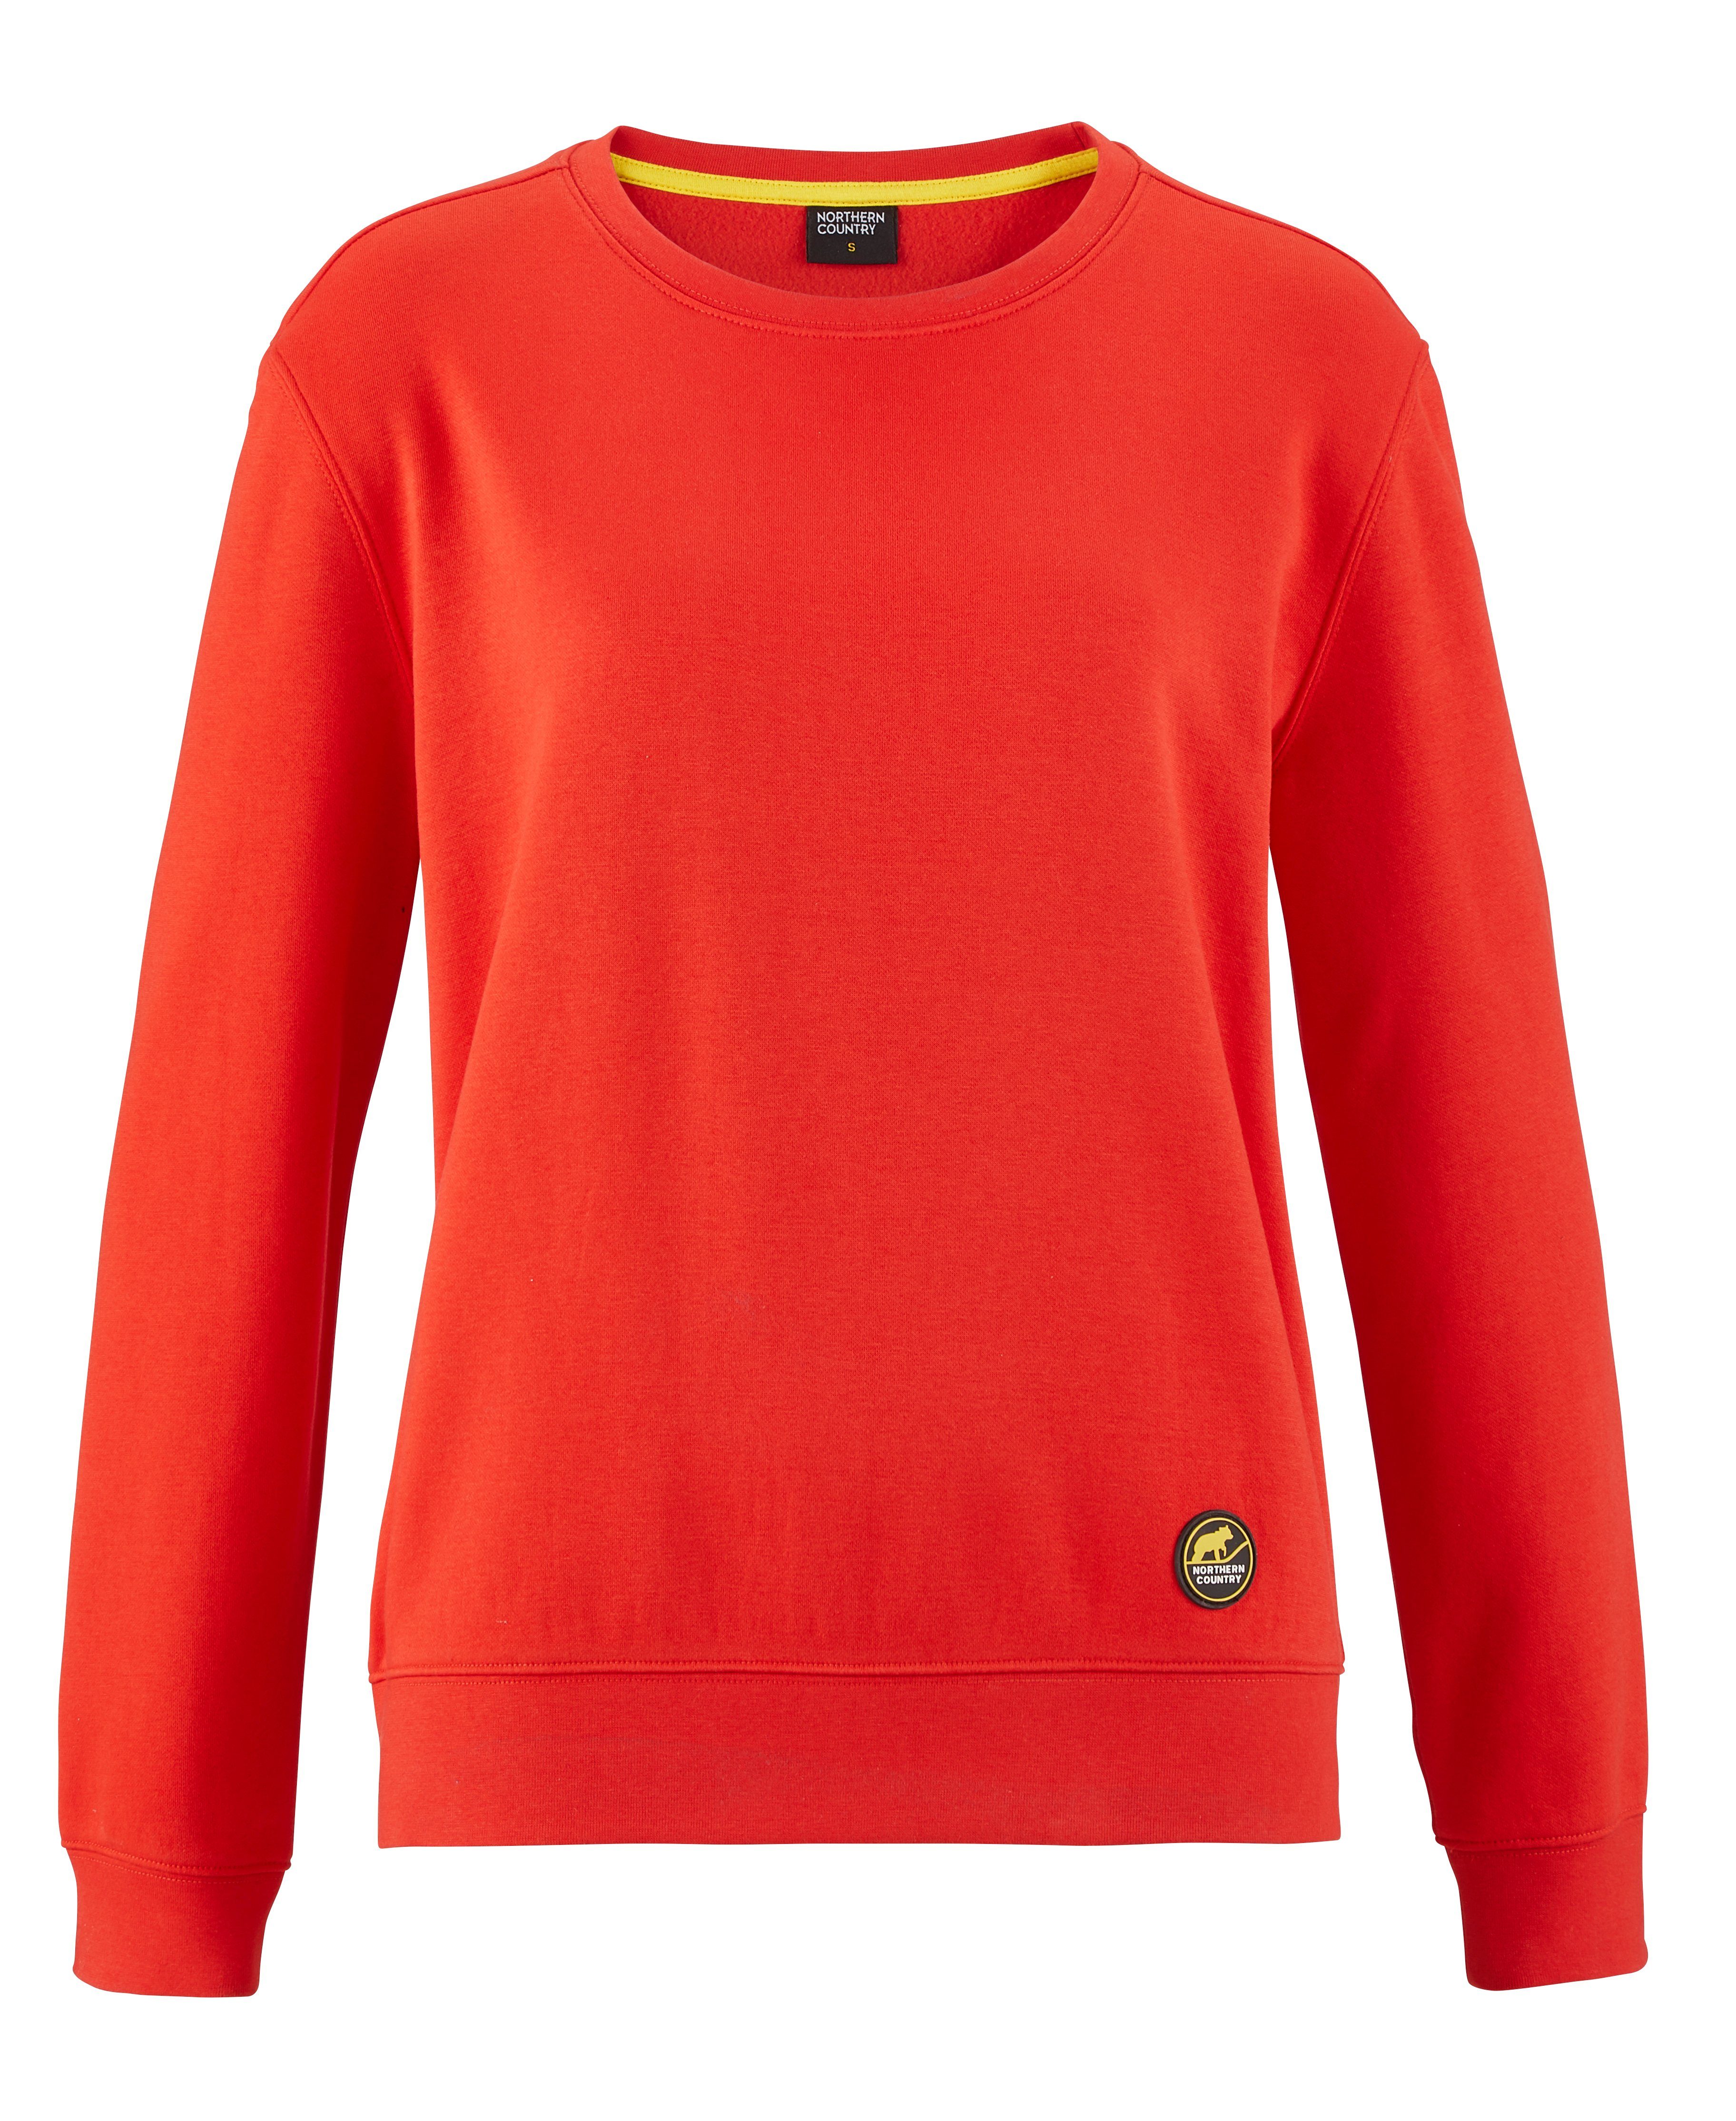 Northern Country Sweatshirt für Damen aus soften Baumwollmix, trägt sich locker und leicht Fiery Red